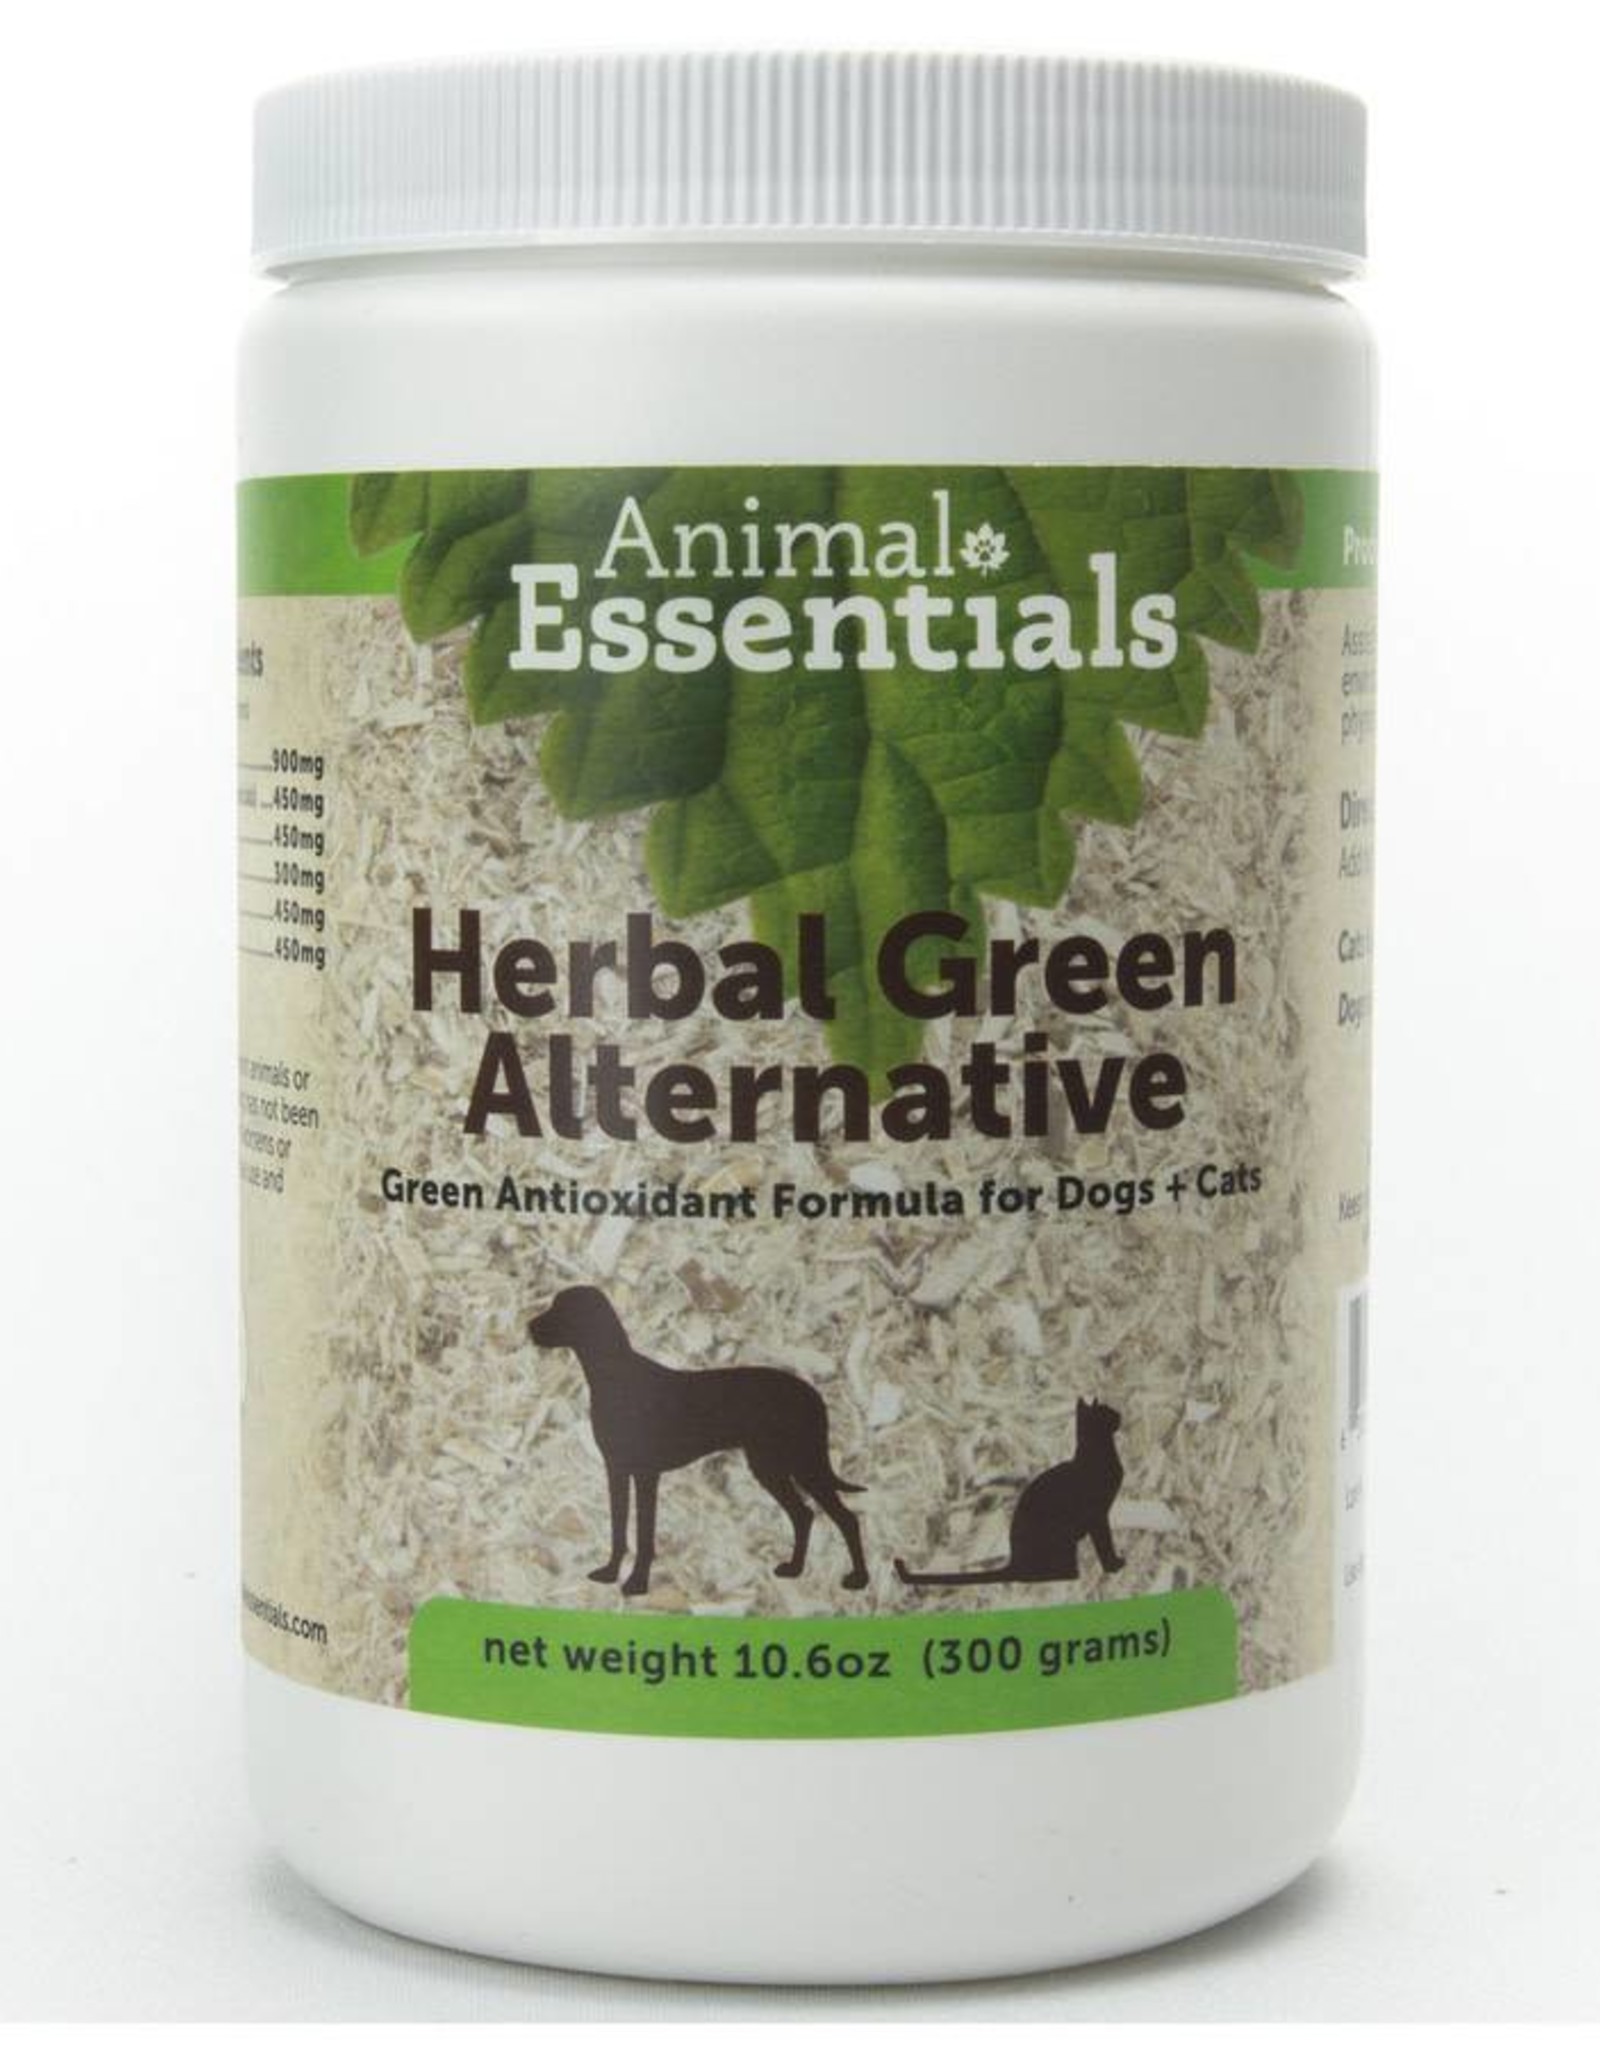 Animal Essentials Animal Essentials Herbal Green Alternative 300g